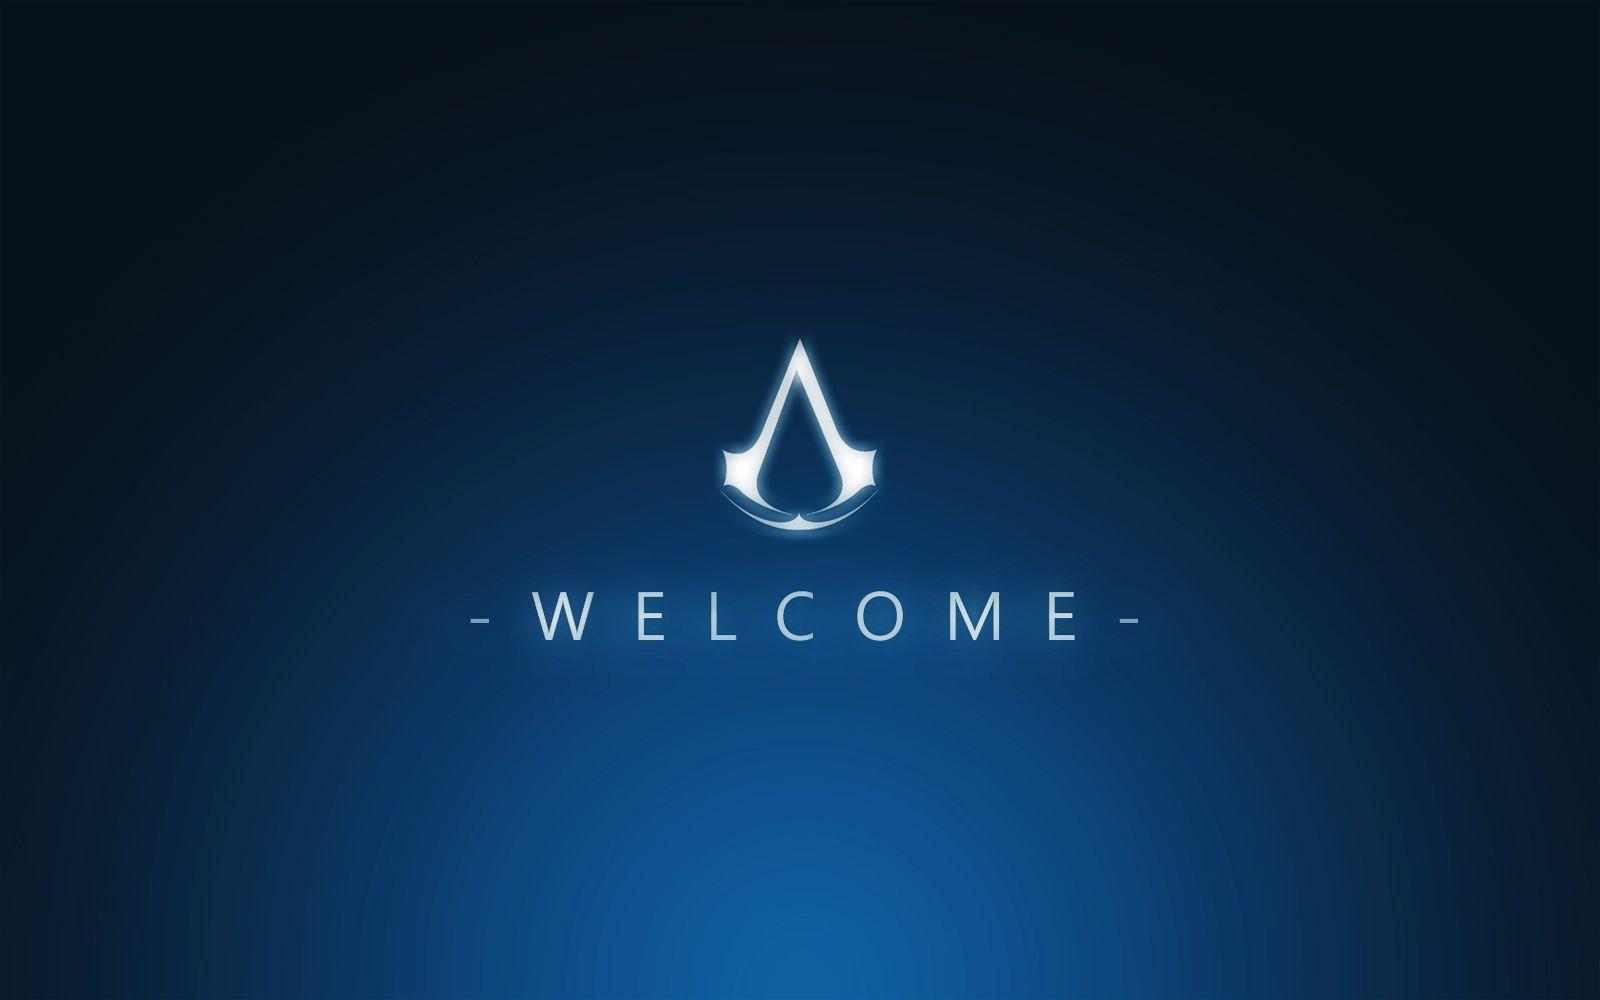 Welcome Assassin Games Logo Wallpaper Best Wallpaper. High